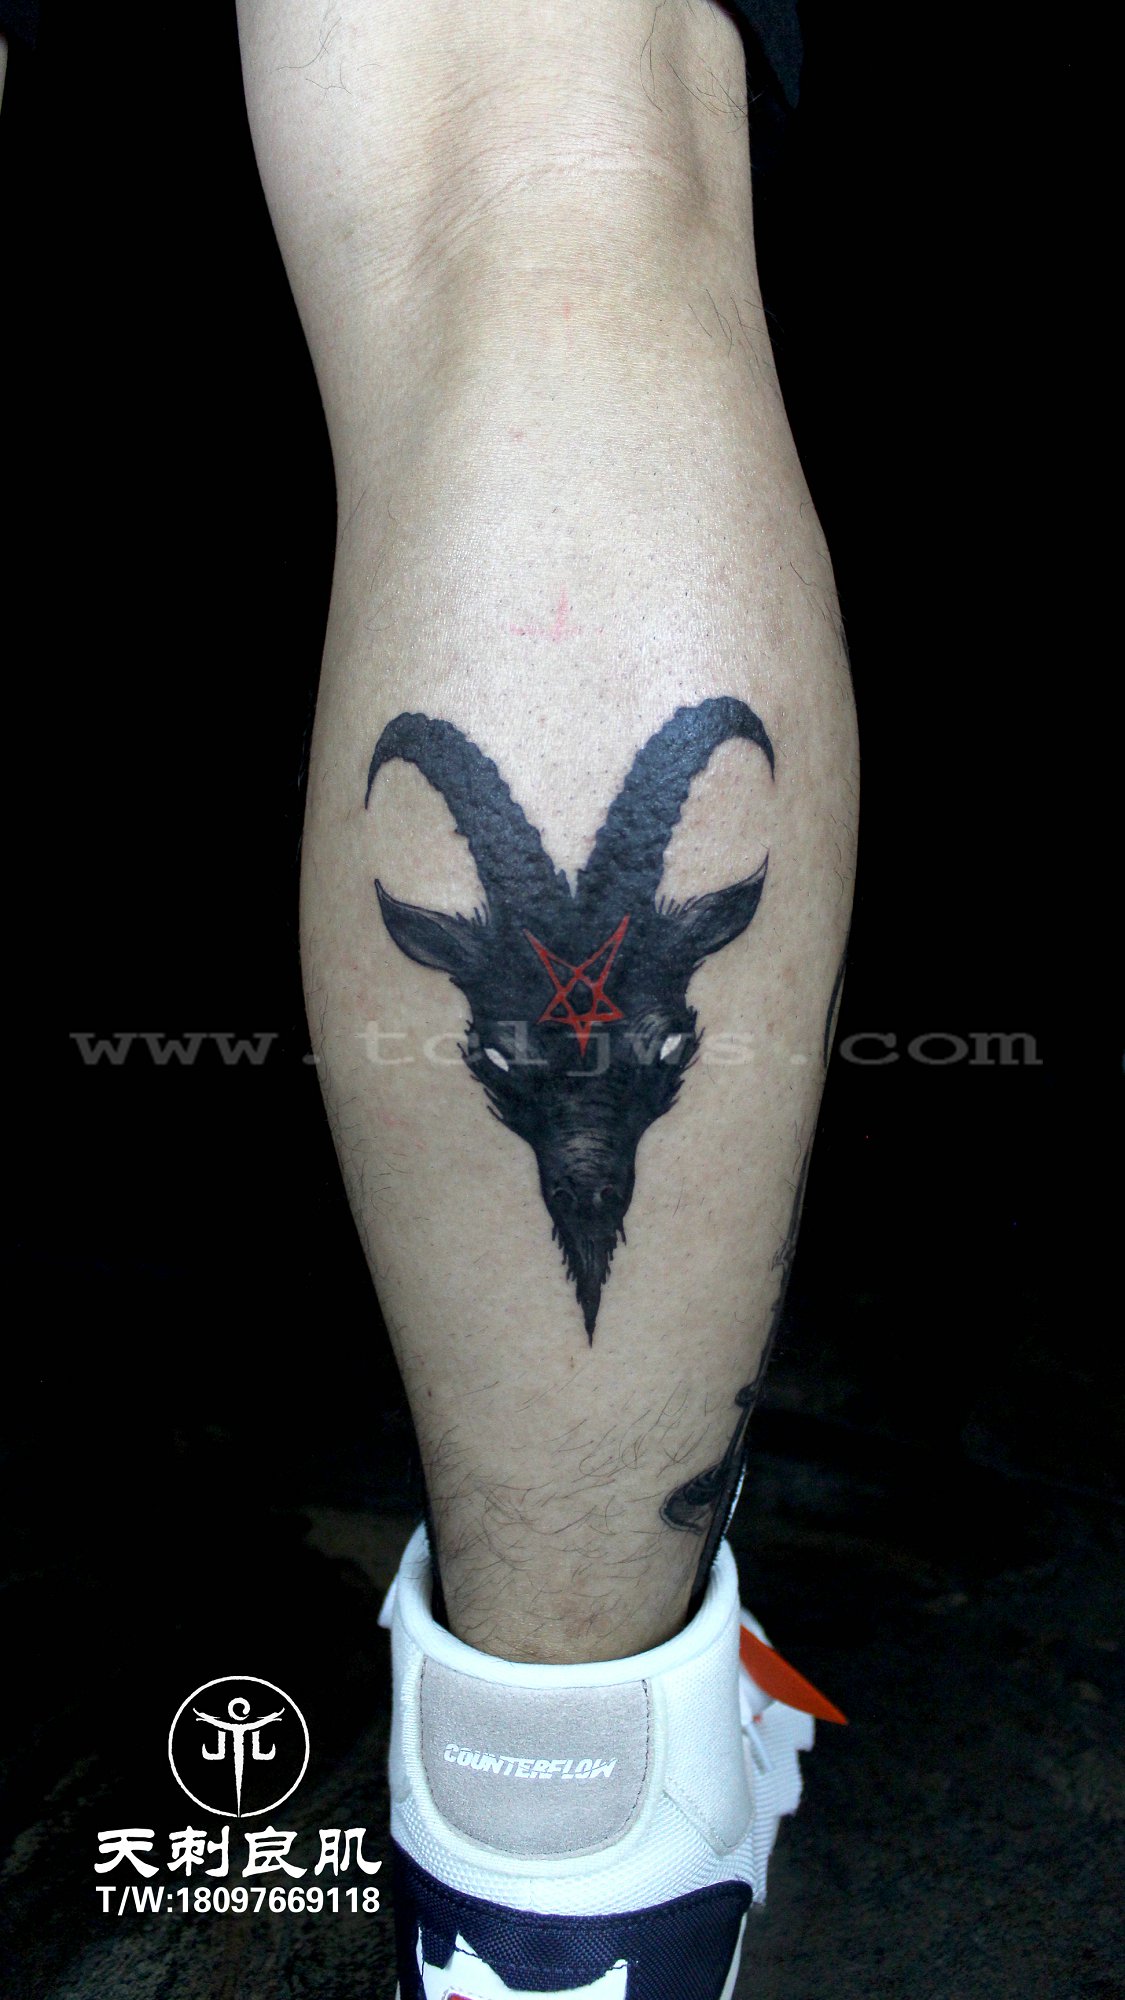 暗黑纹身，小腿后侧山羊纹身